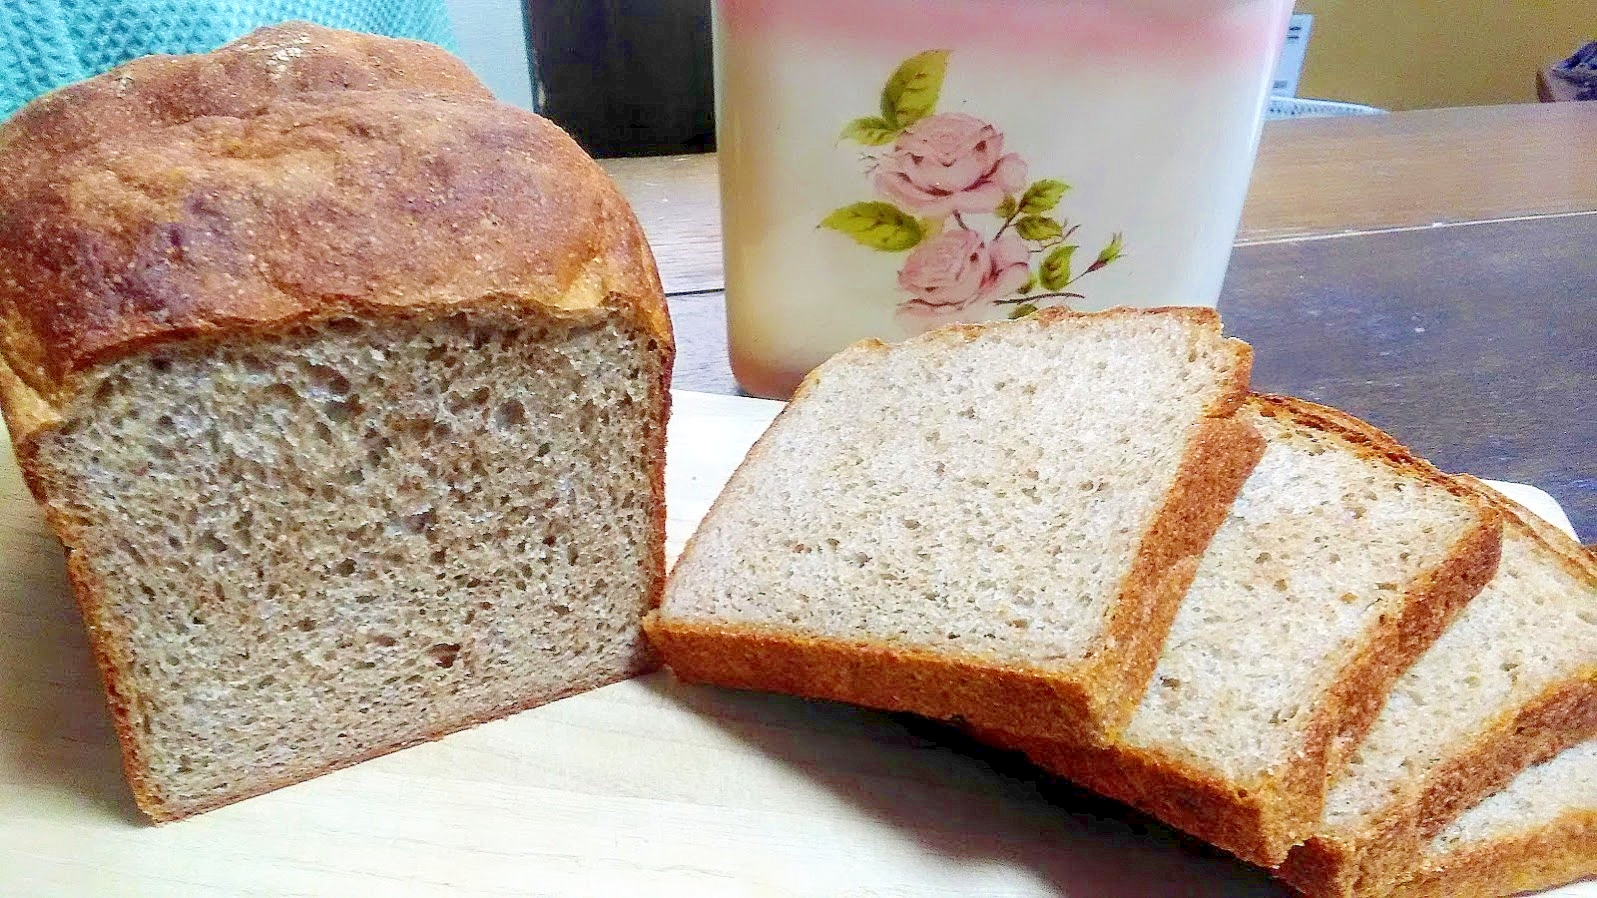 低GI　全粒粉だけのふわふわ食パン